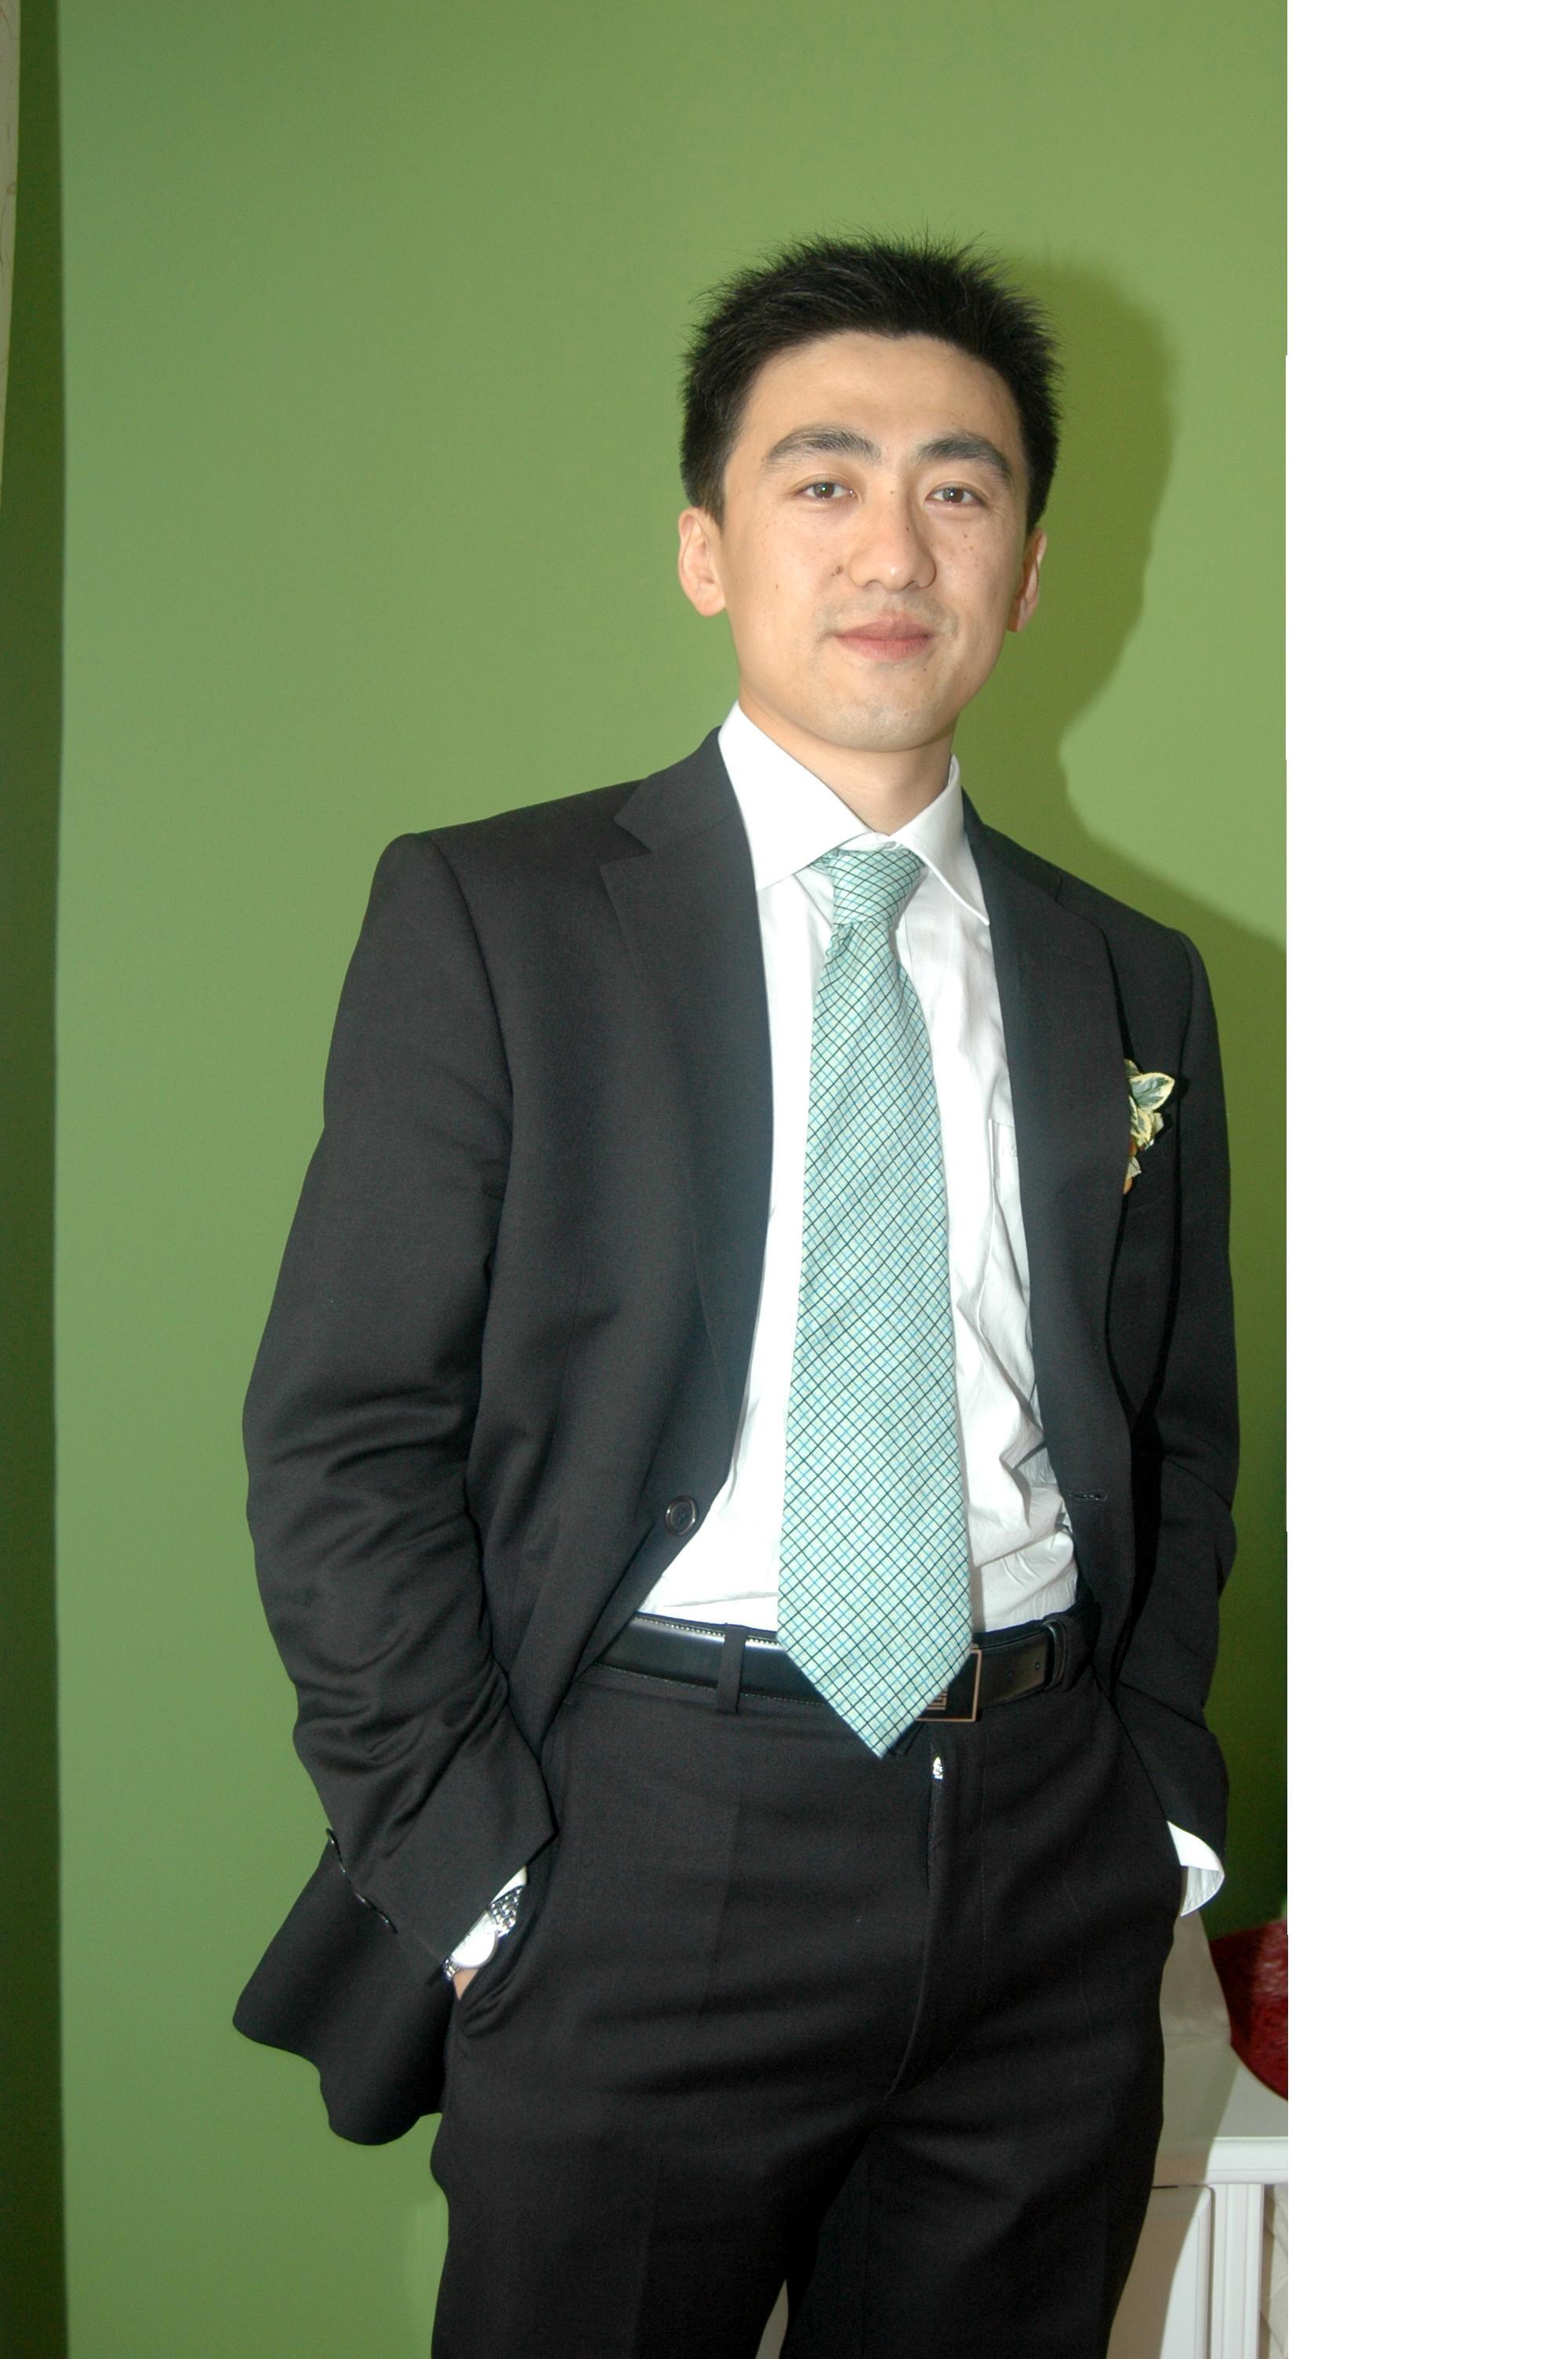 Mr. Jing Zhang